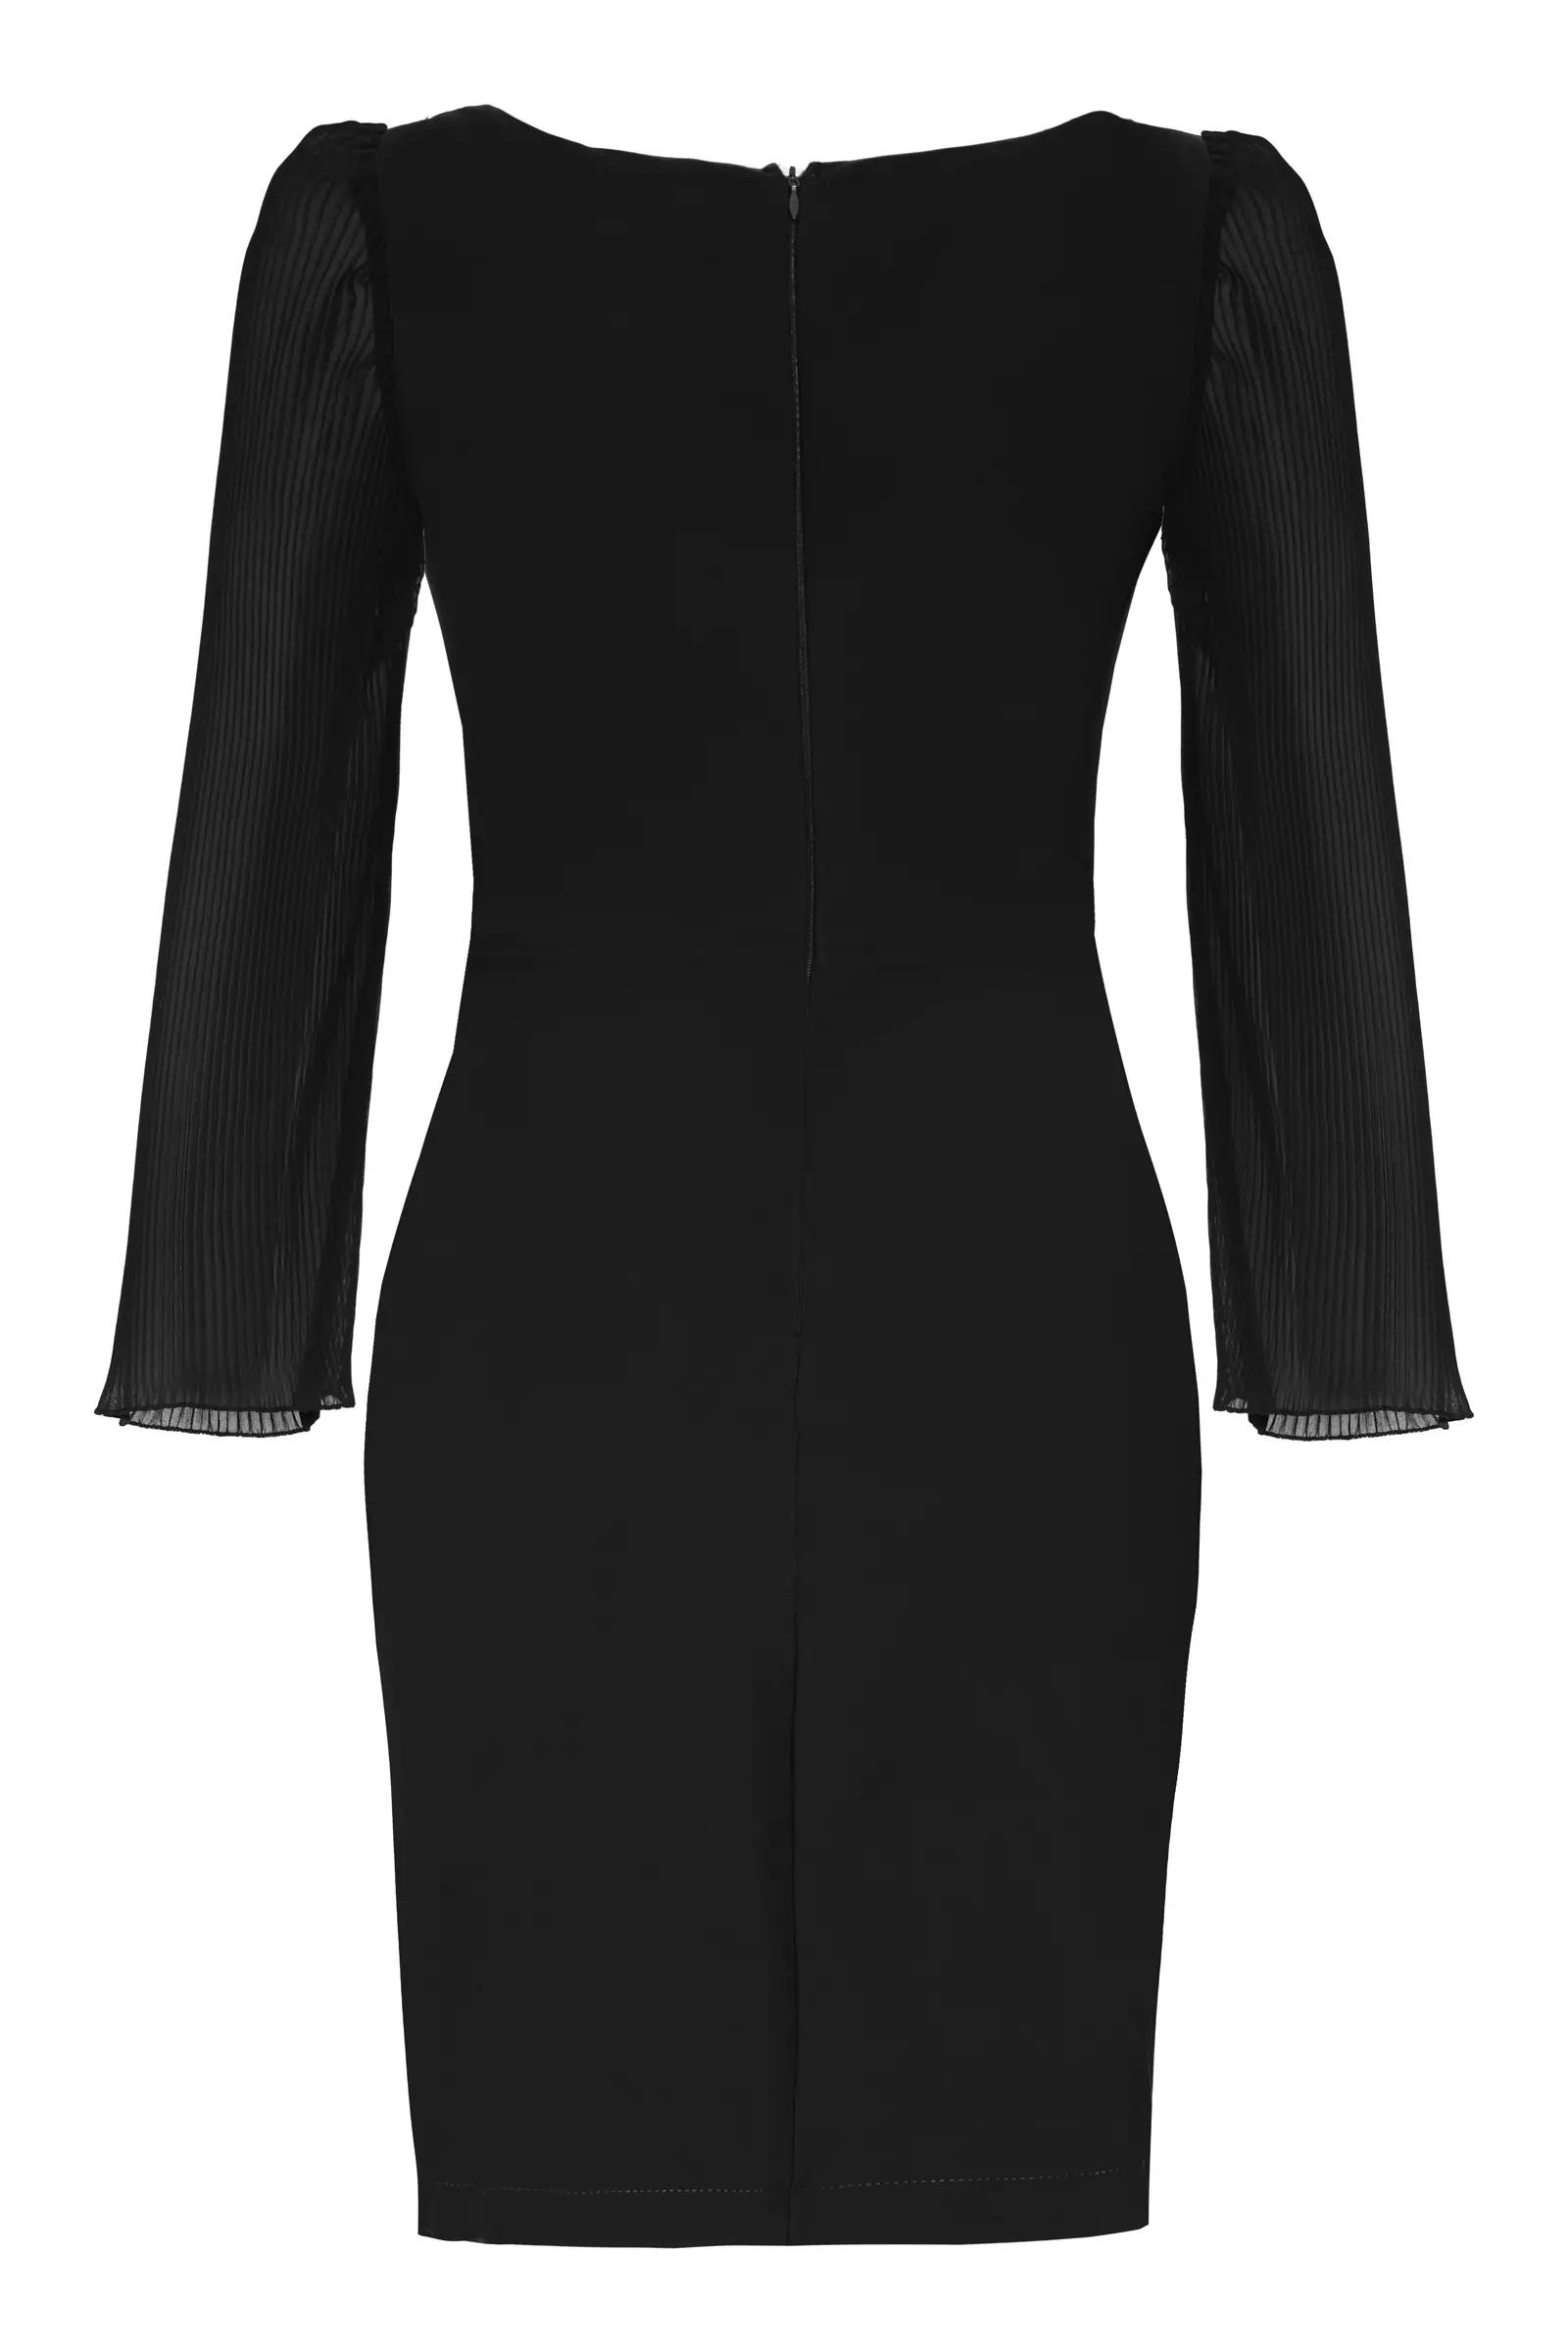 Black crepe long sleeve mini dress